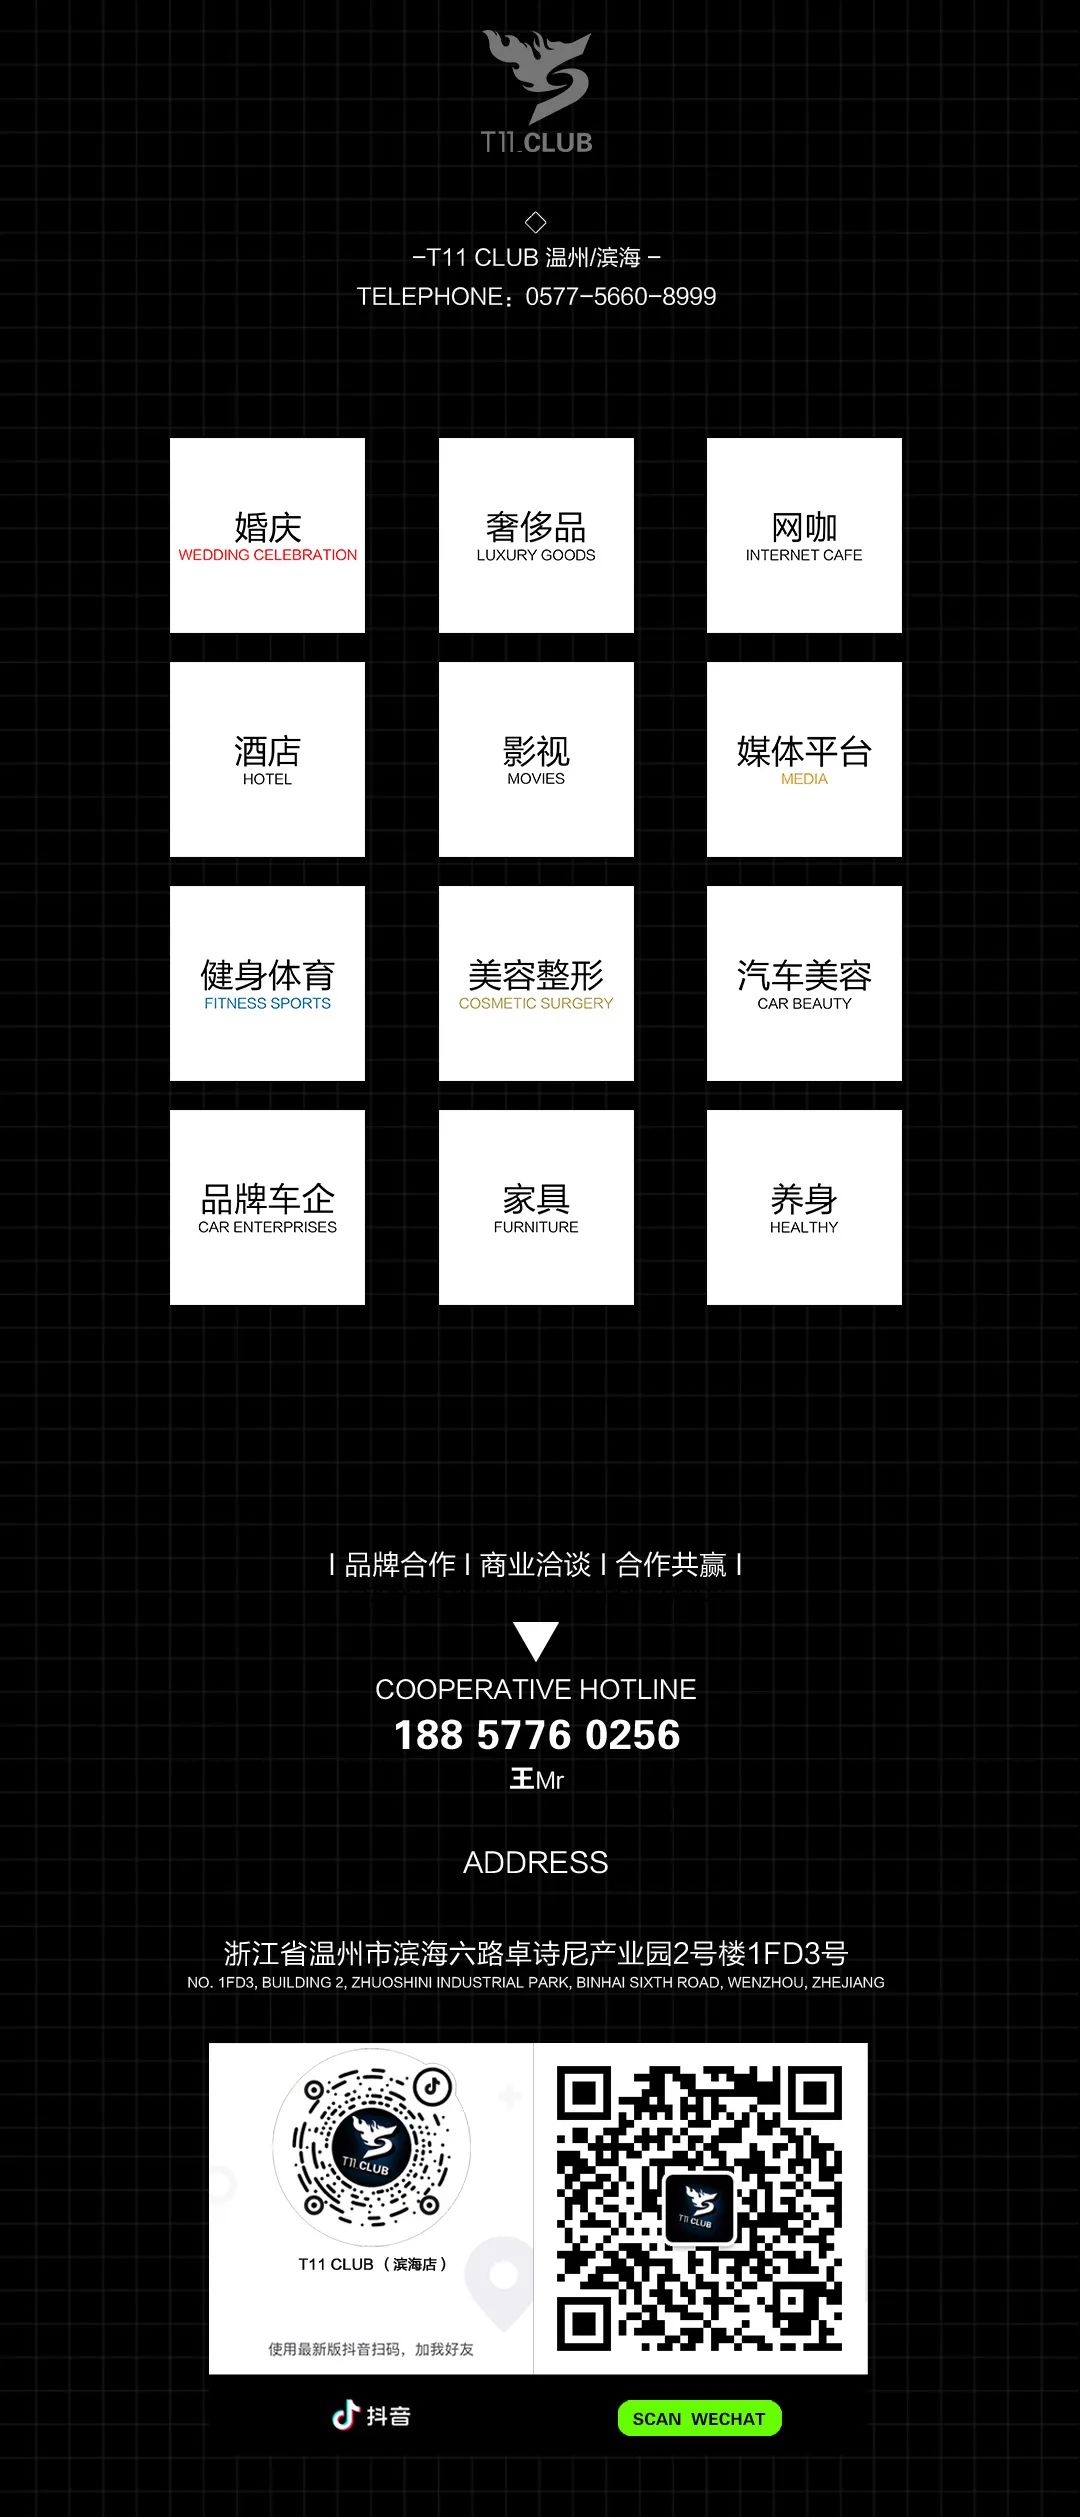 T11 CLUB 品牌诠释,一个全新的娱乐地标即将降临!-温州T11酒吧/T11 CLUB